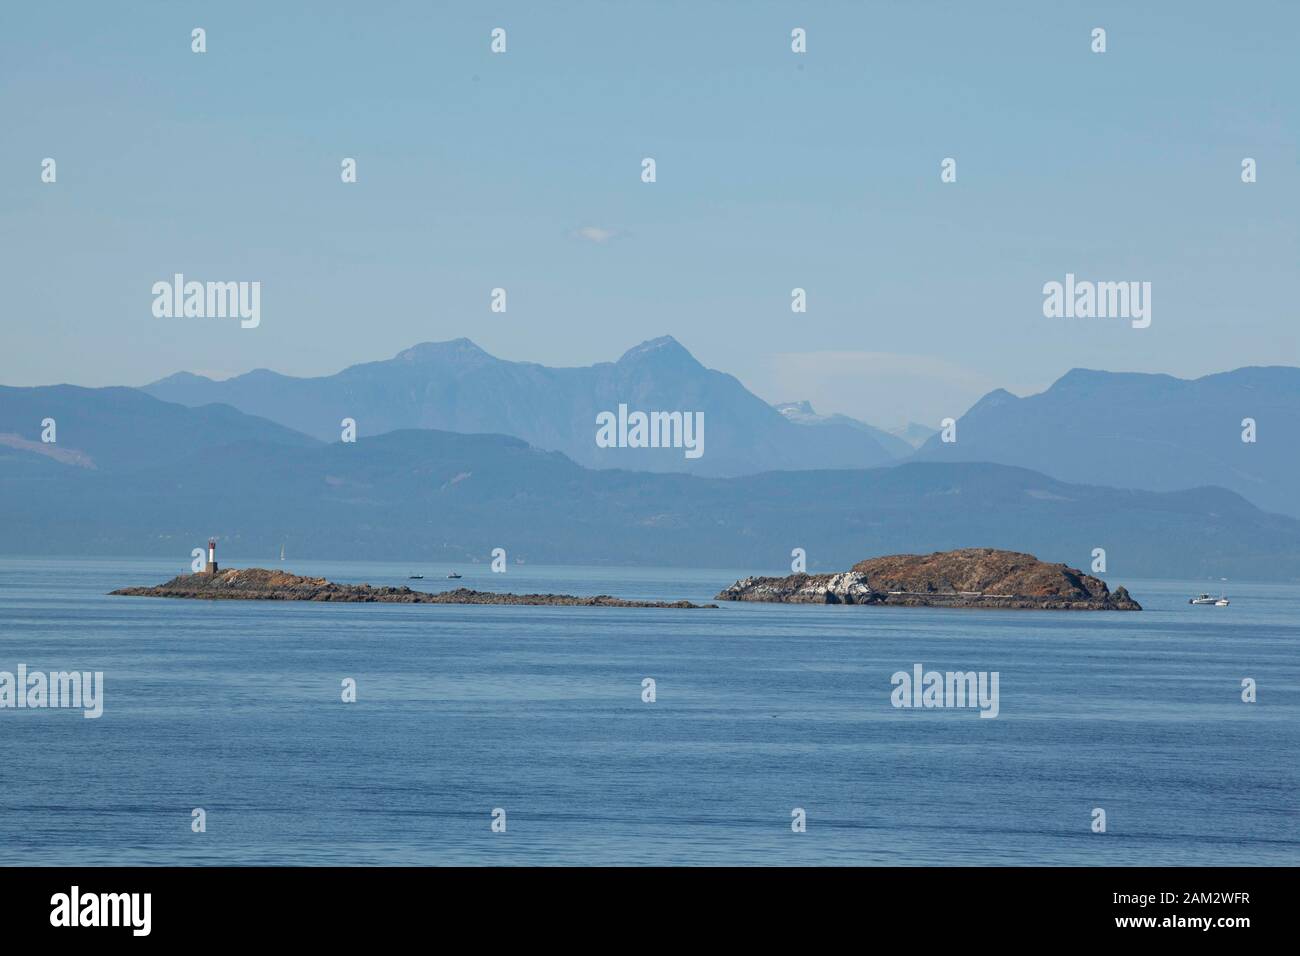 Seamark su isolotto con Monte Baker sullo sfondo, Vancouver Island, British Columbia, Canada Foto Stock